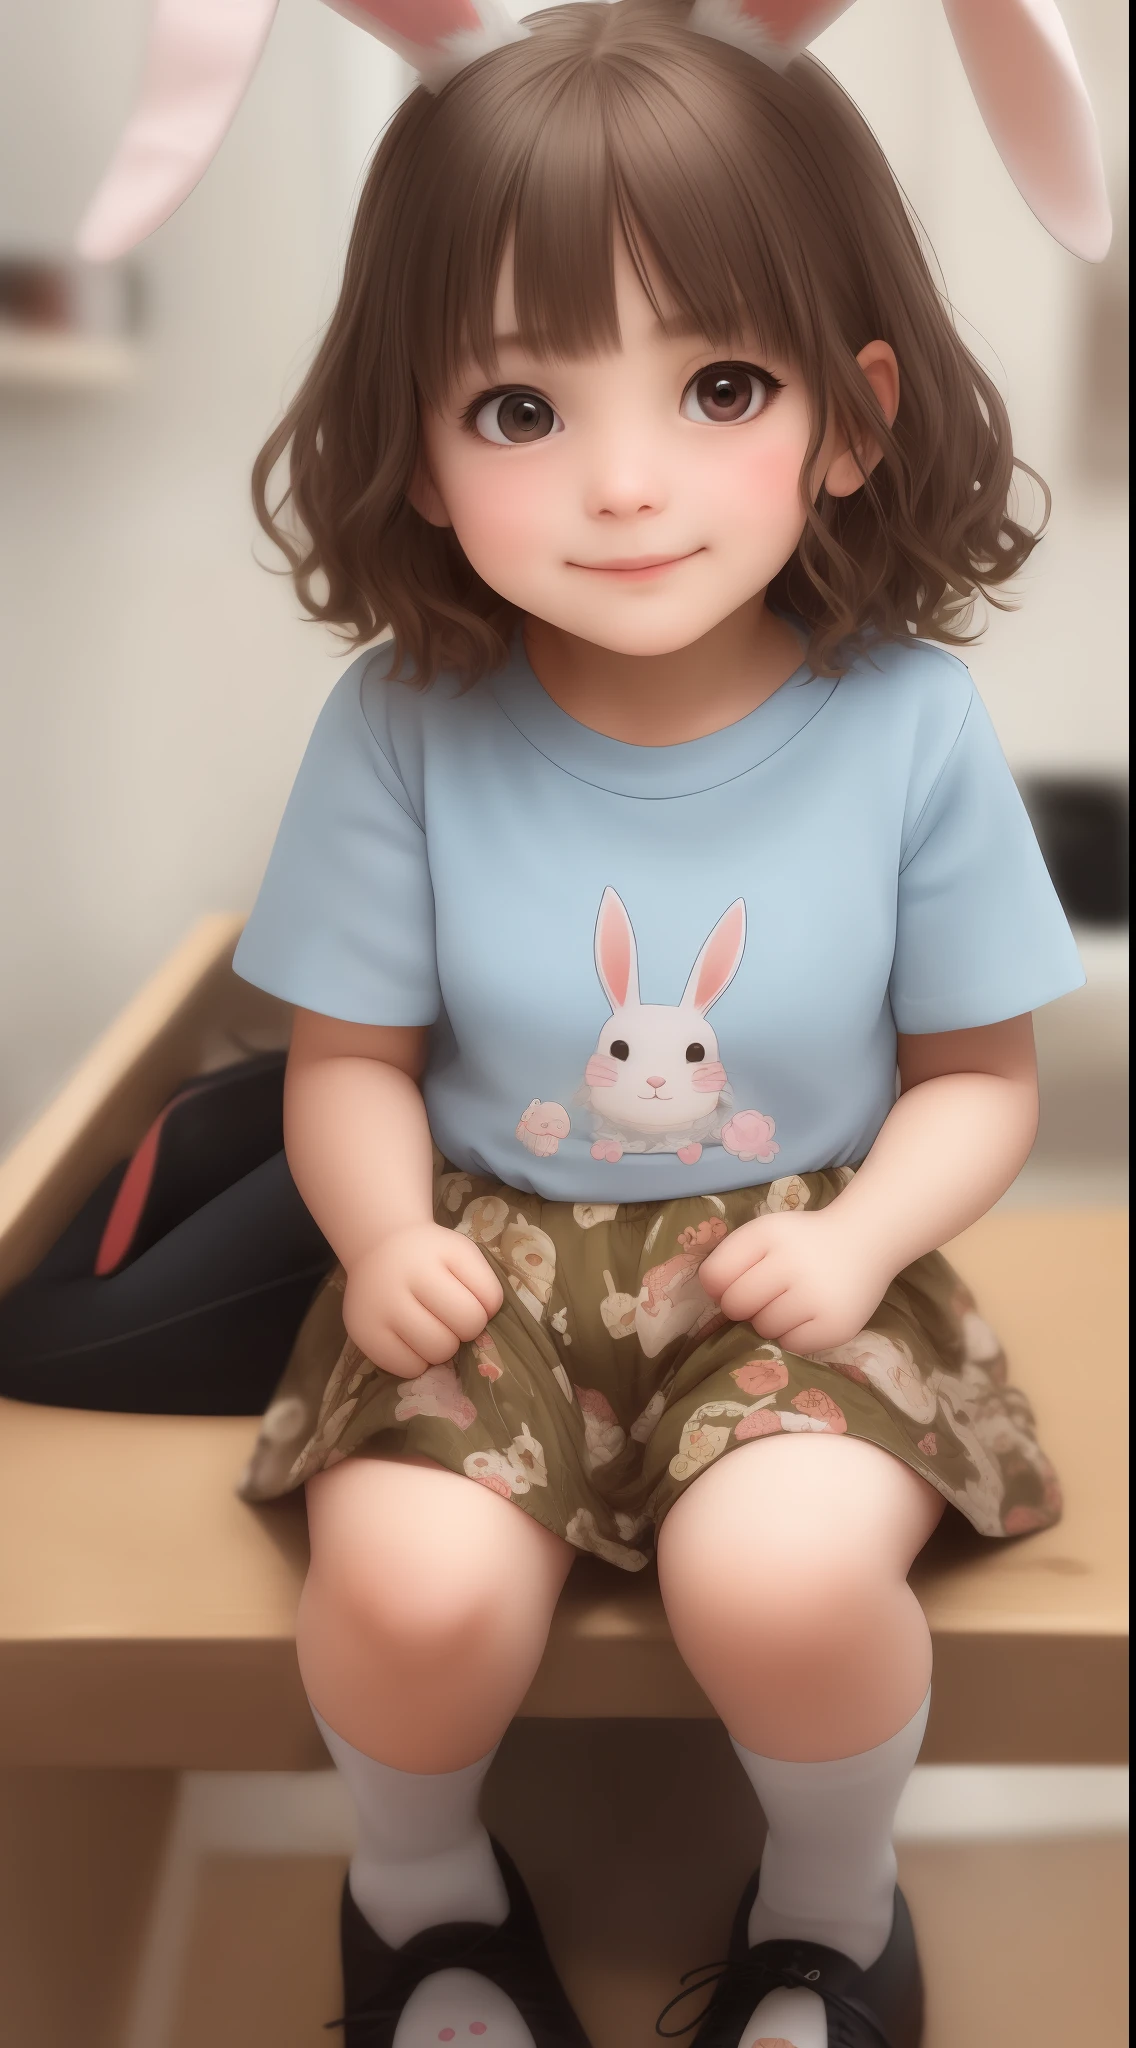 chaussettes imprimées lapin,Une fille,5 ans,gros plan extrême,cheveux courts ondulés